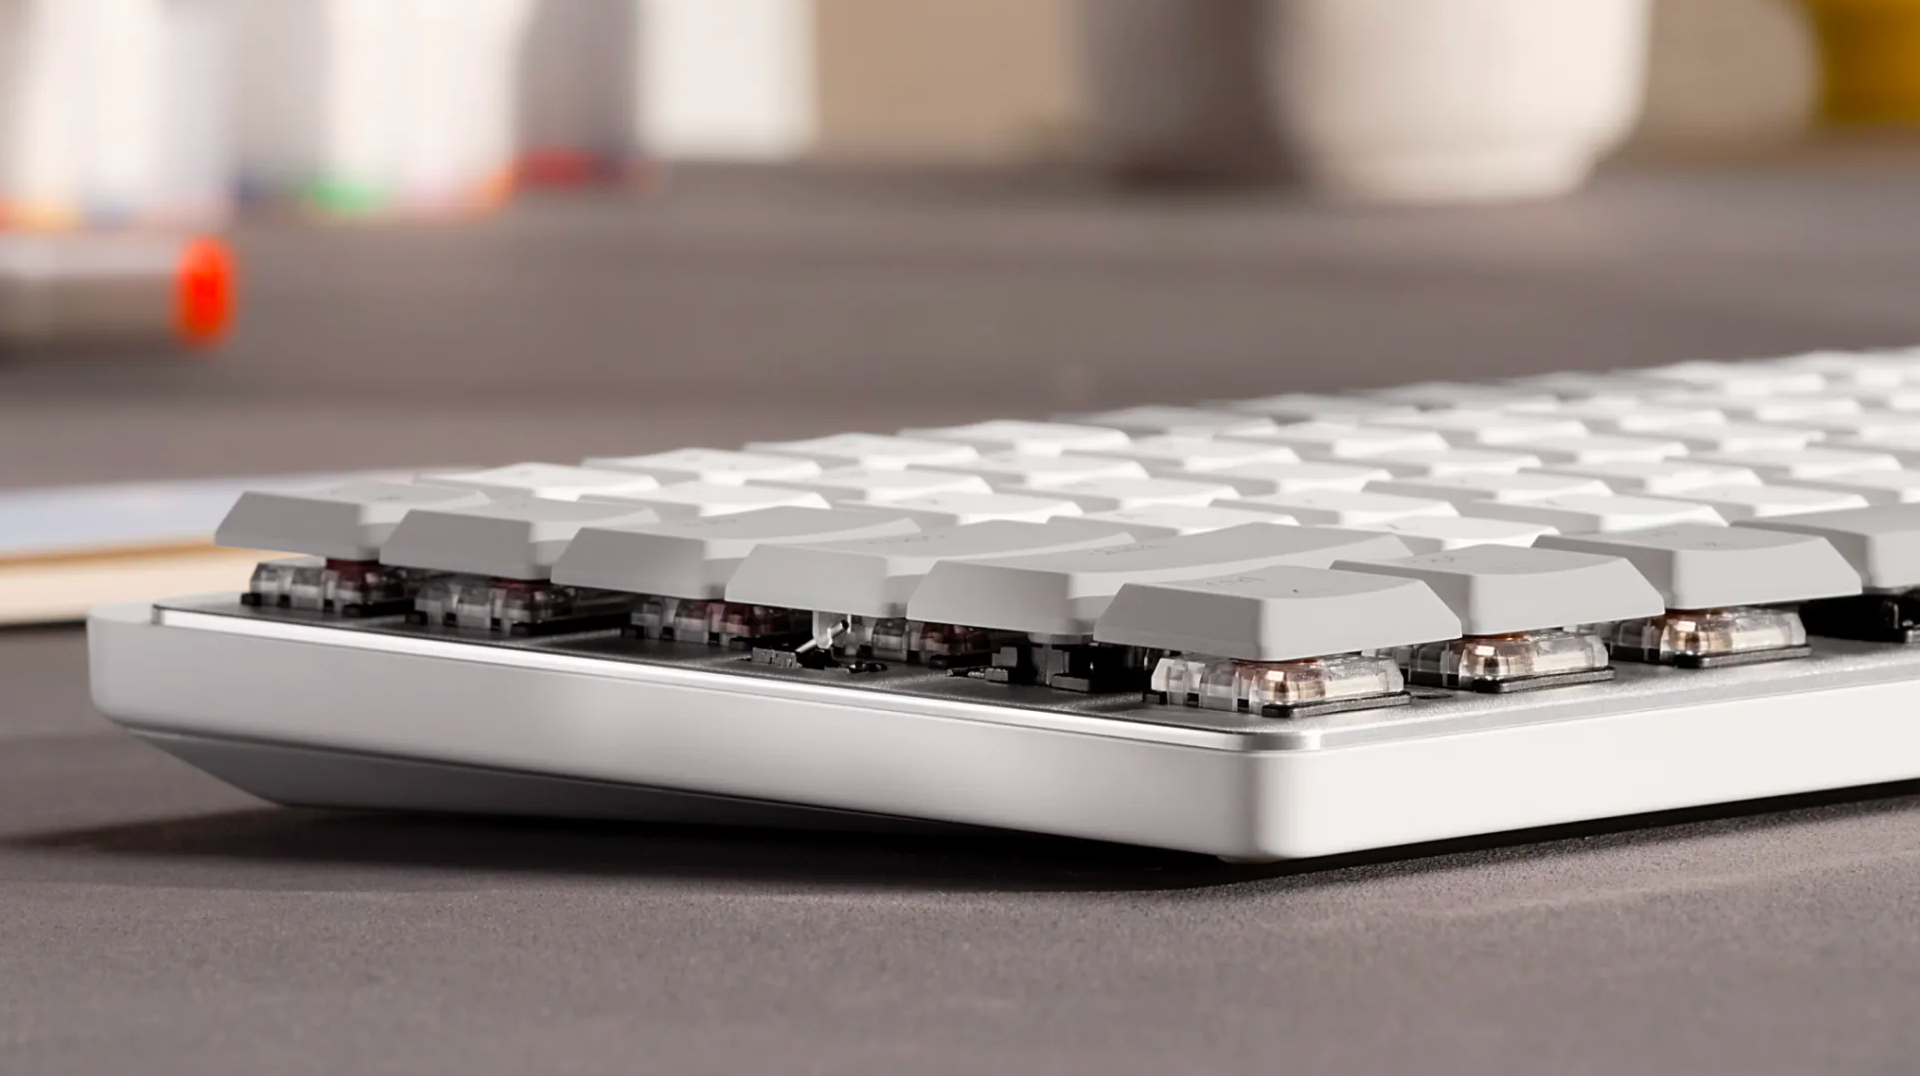 Logitech MX Mechanical Mini : le nouveau clavier mécanique de